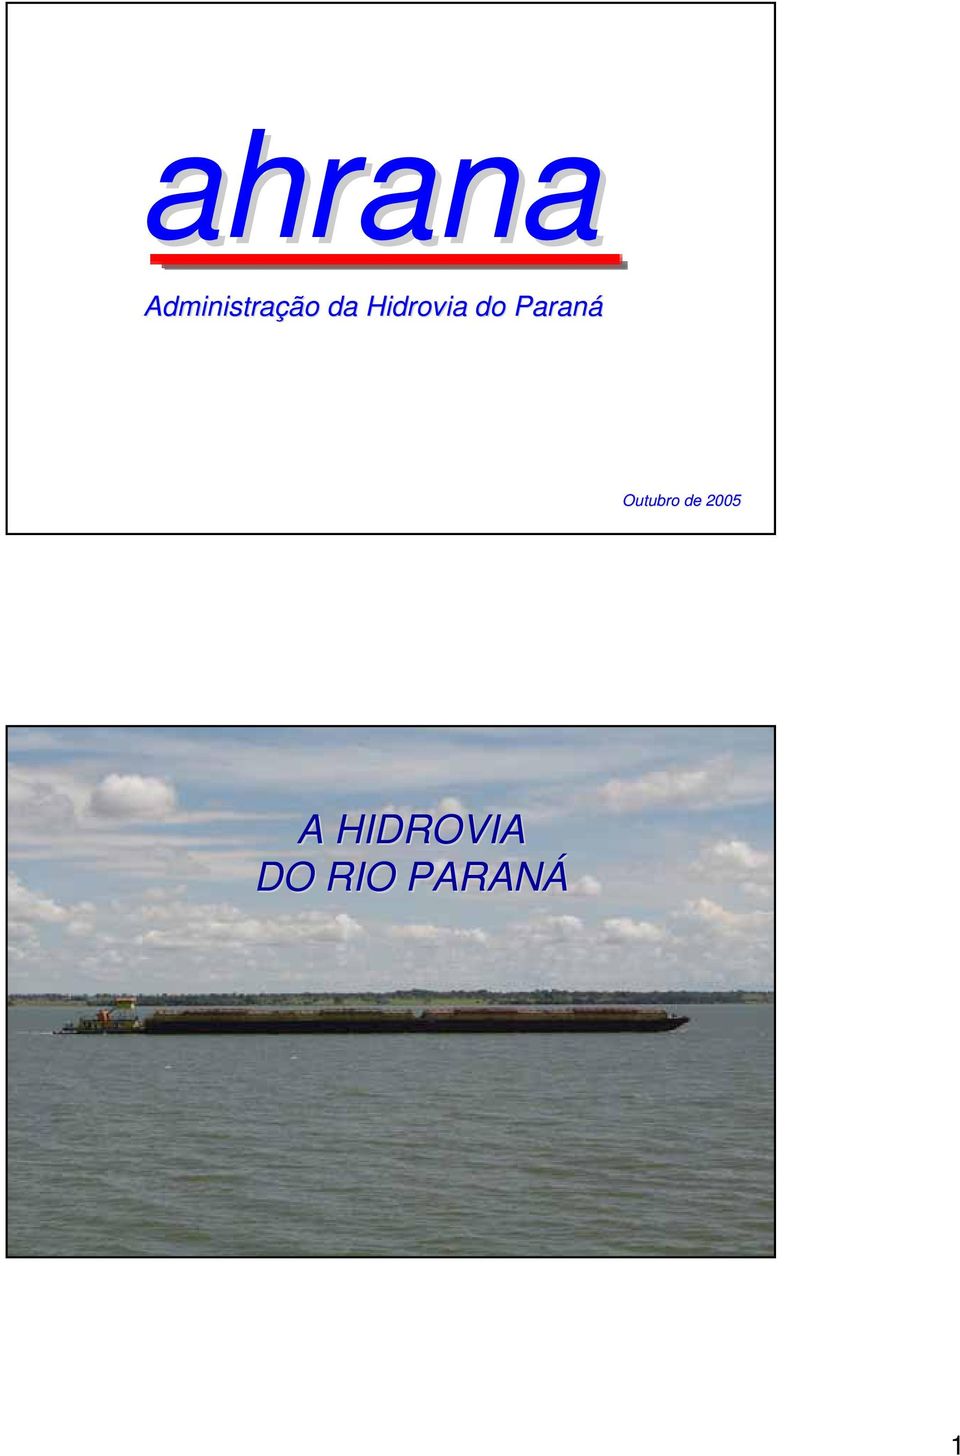 Hidrovia do Paraná